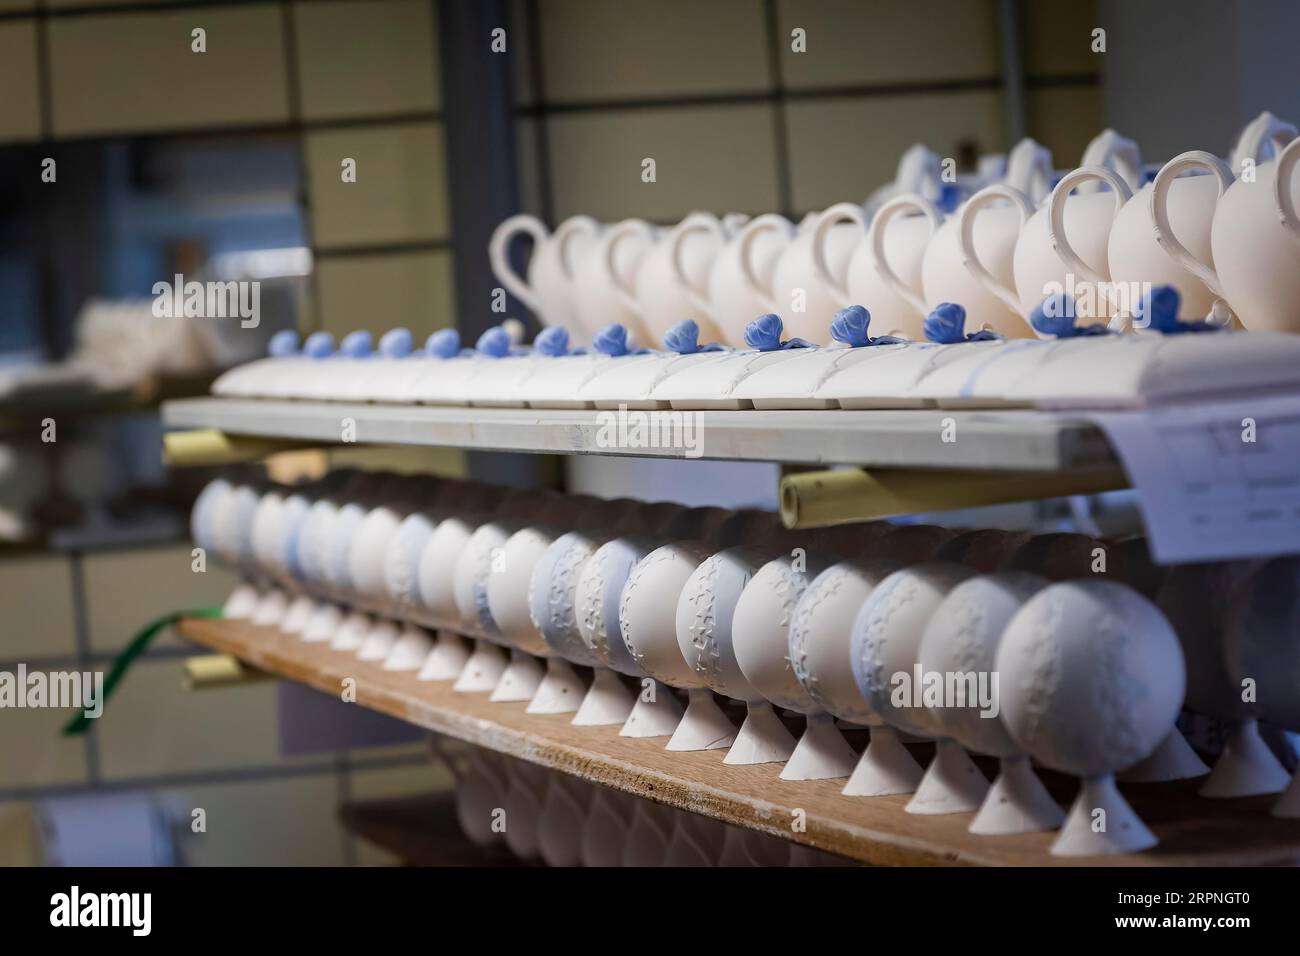 Meissen è la più antica manifattura di porcellana d'Europa e si è contraddistinta per l'artigianato unico sin dalla sua fondazione nel 1710. Forni con spazi vuoti Foto Stock